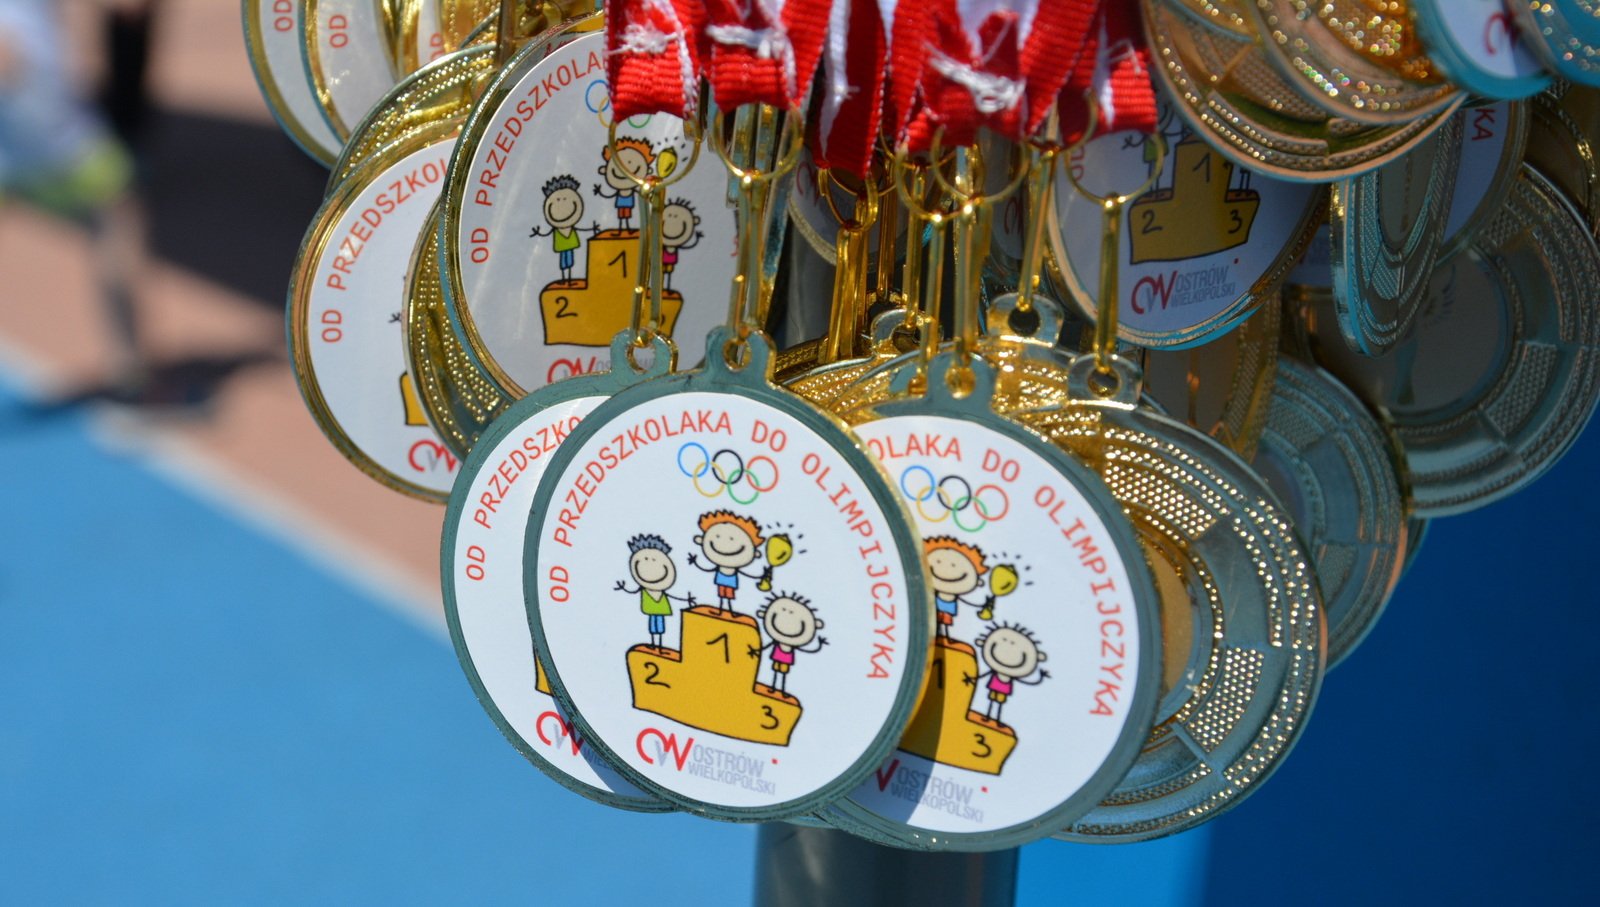 Zestaw medali dla przedszkolaków, na których widnieje napis "Od przedszkolaka do Olimpijczyka"